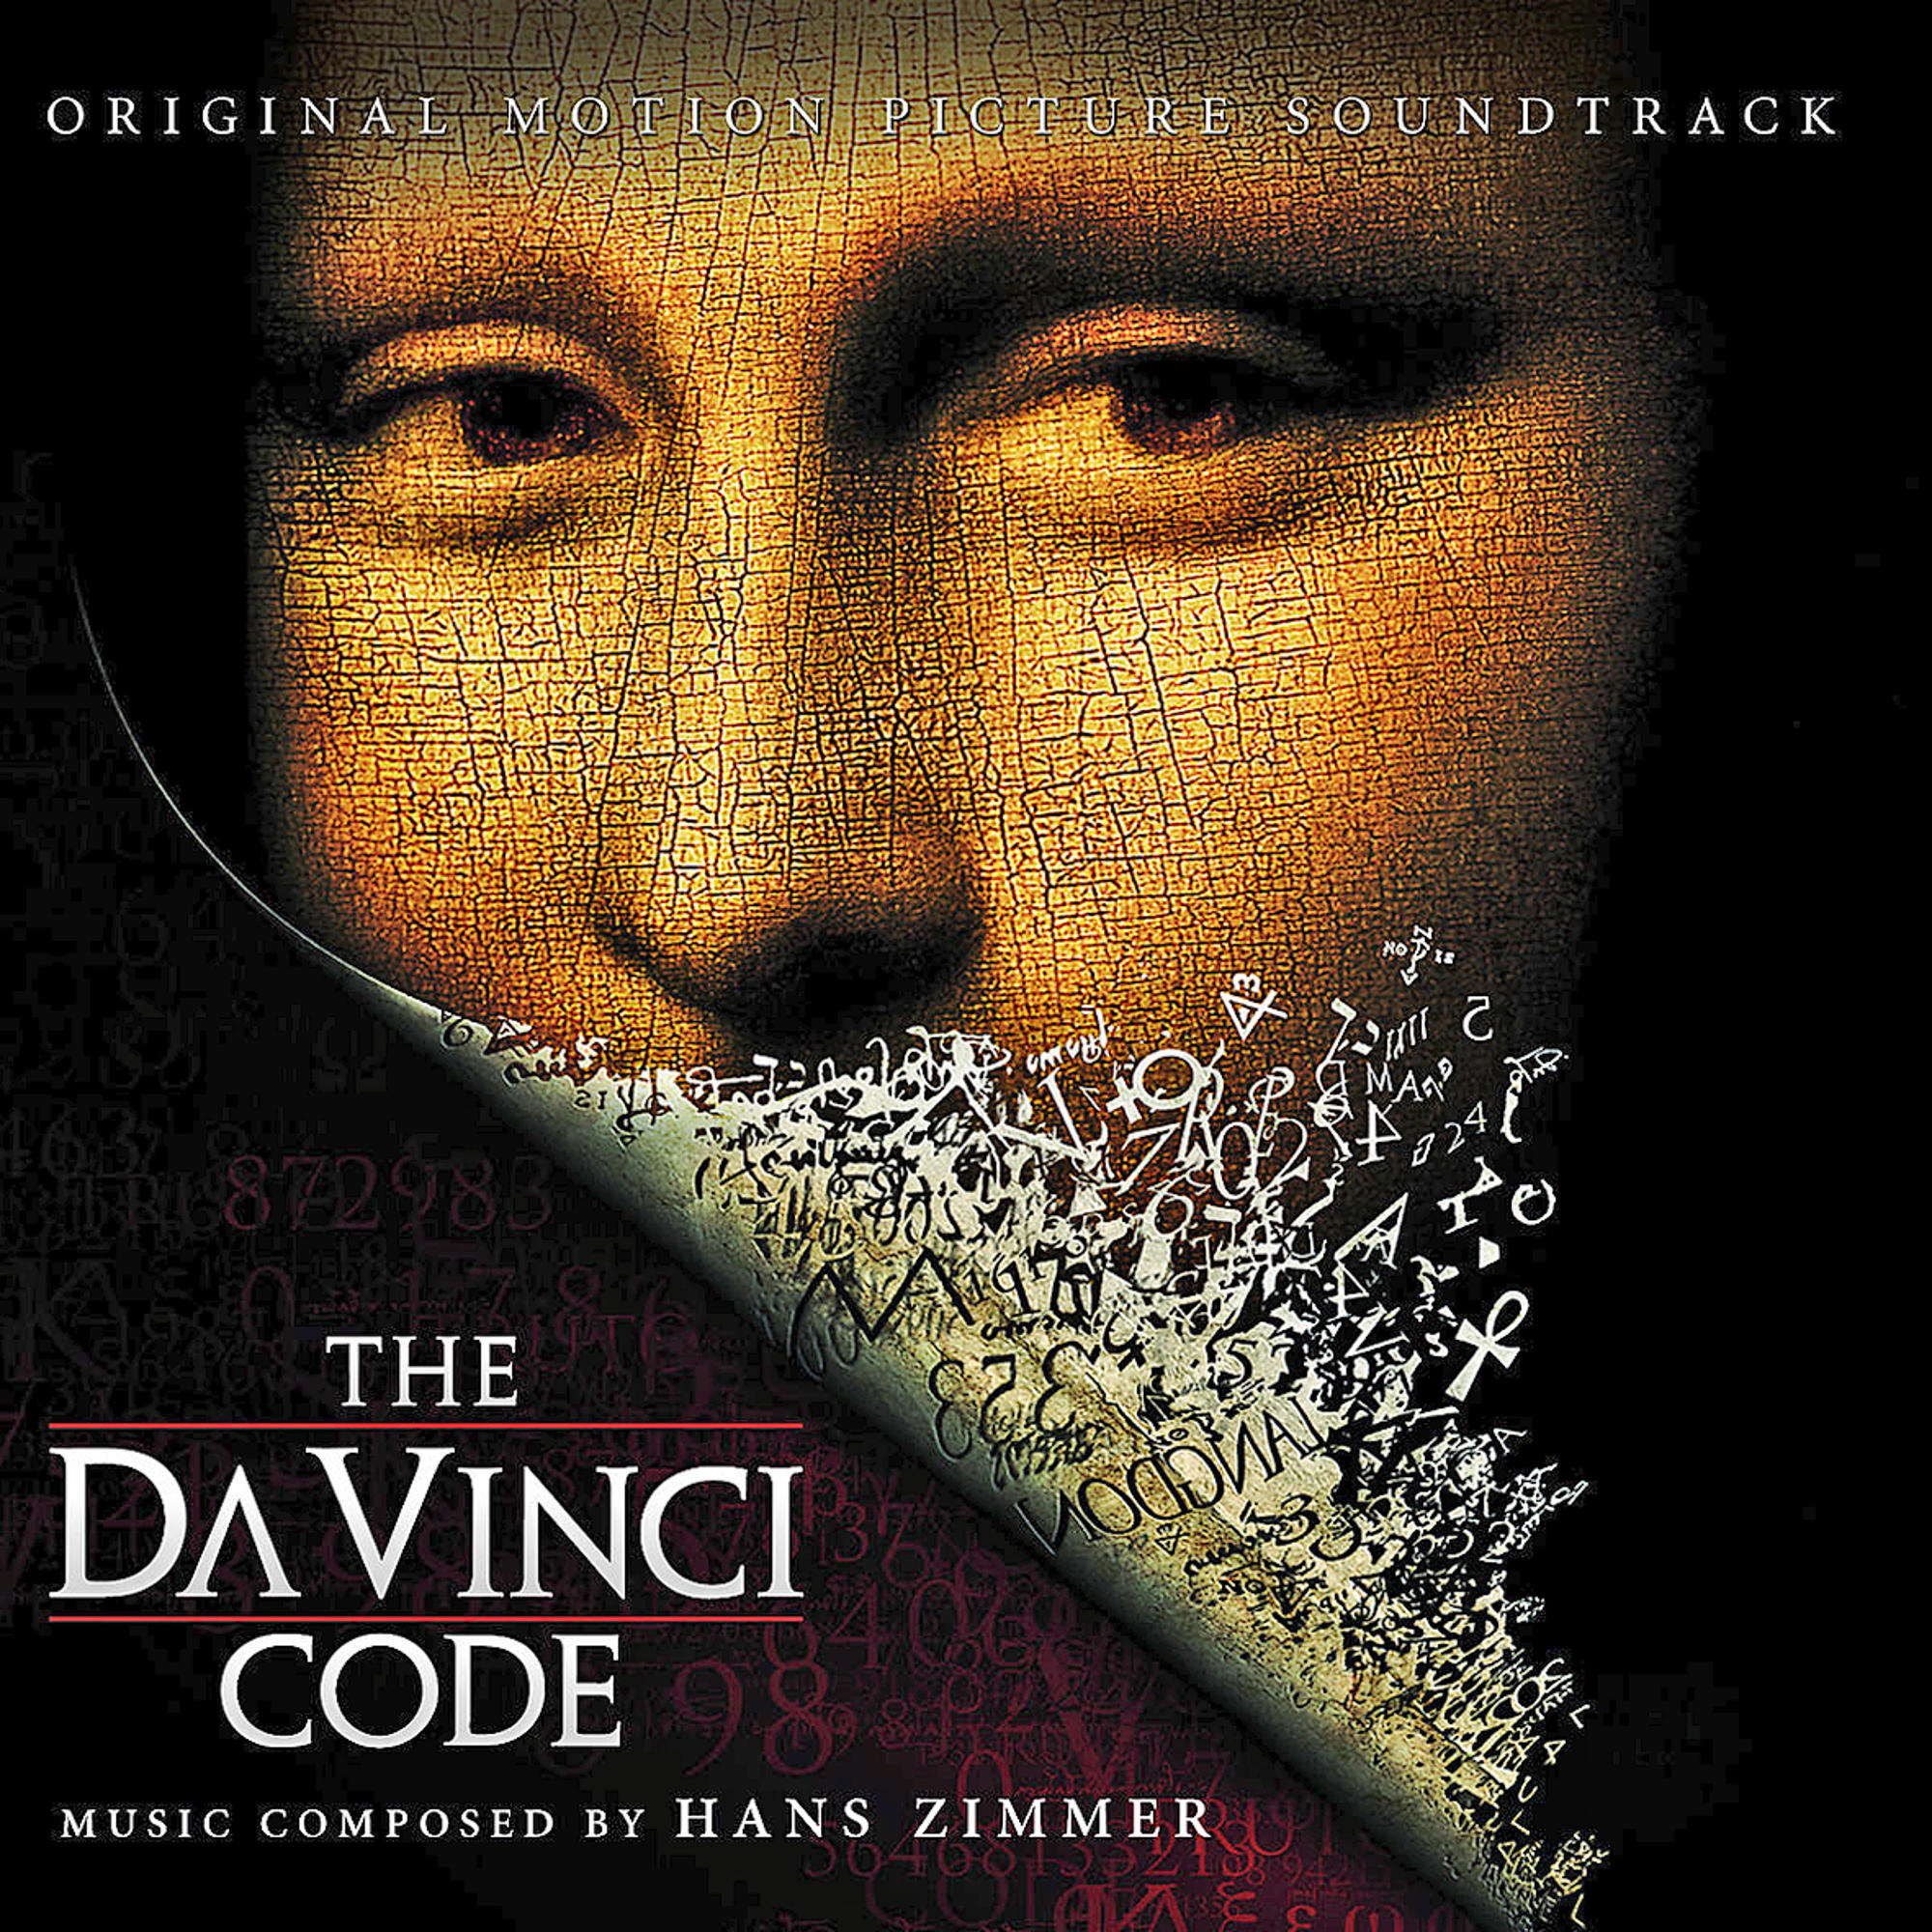 The Original Soundtrack, Hans (composer) Da Code/Sakrileg Vinci - (CD) - Ost/zimmer